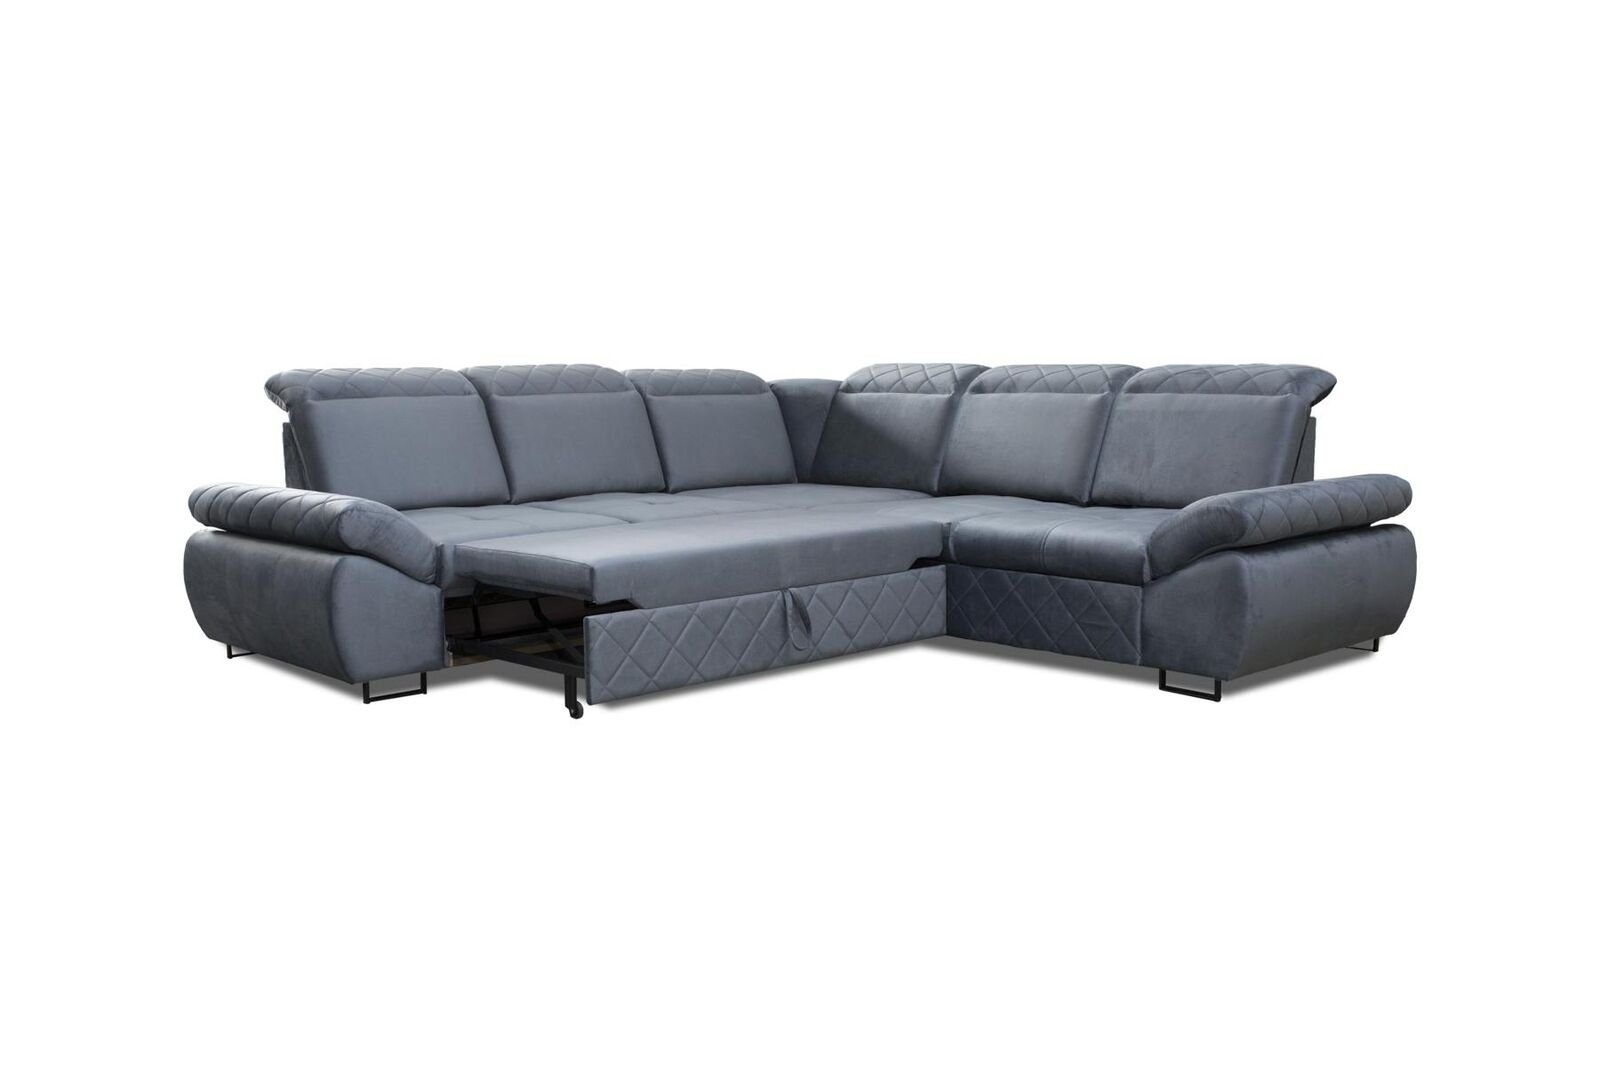 JVmoebel Ecksofa Bettfunktion Ecksofa, Couchs Textil Design Mit Neu LForm Blau Moderne Möbel Sofas Wohnzimmer